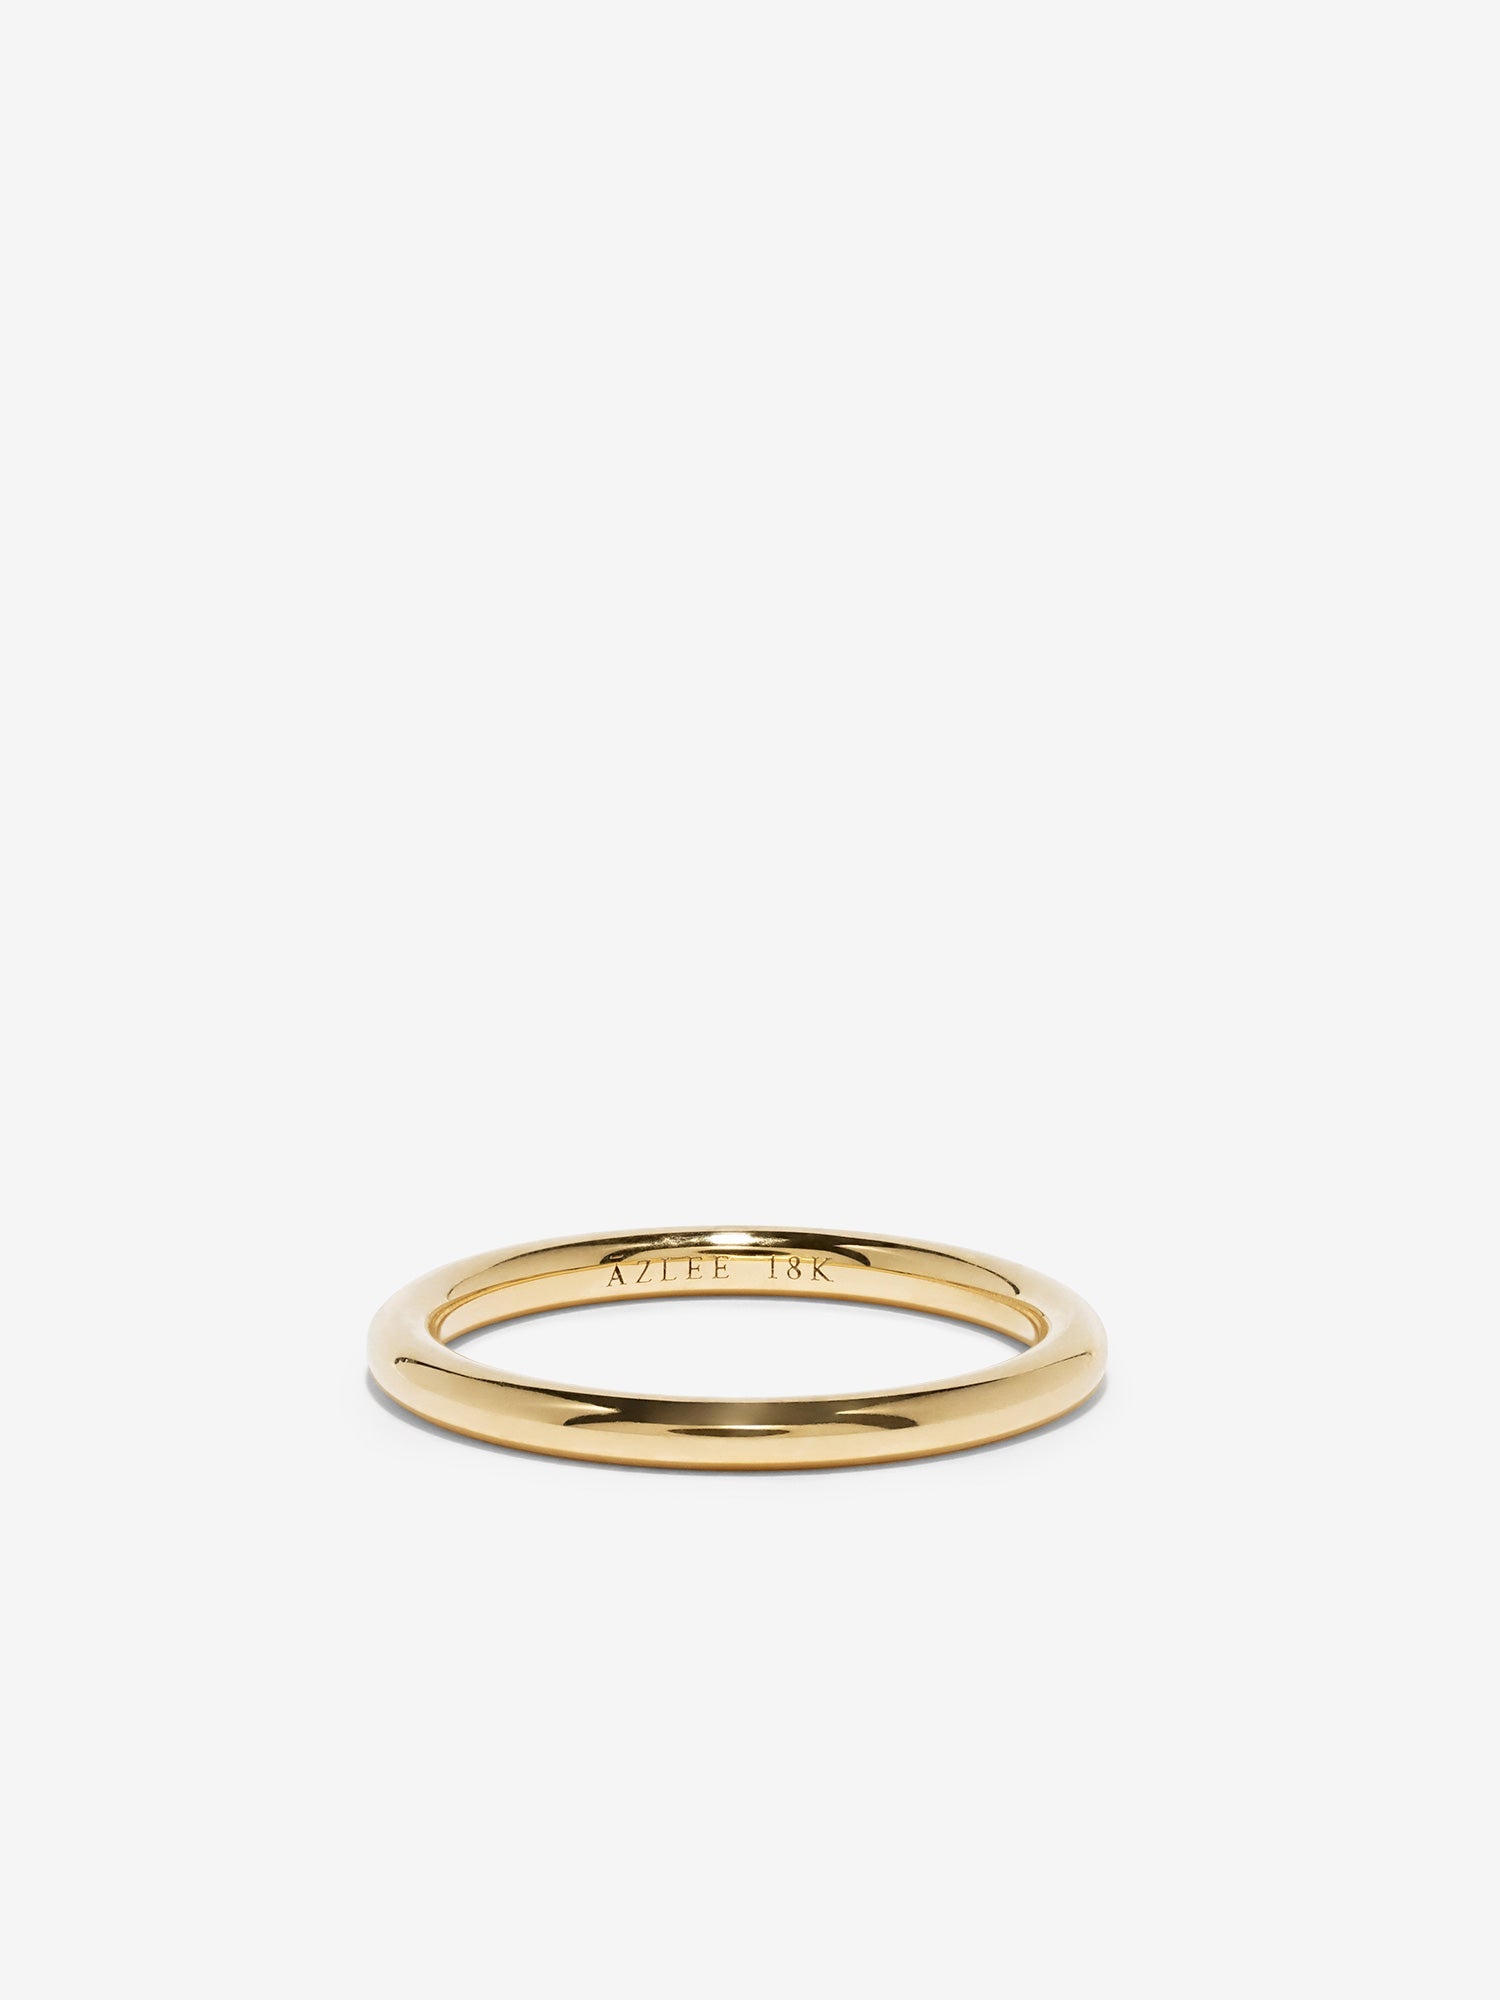 1.8 完全に丸い結婚指輪